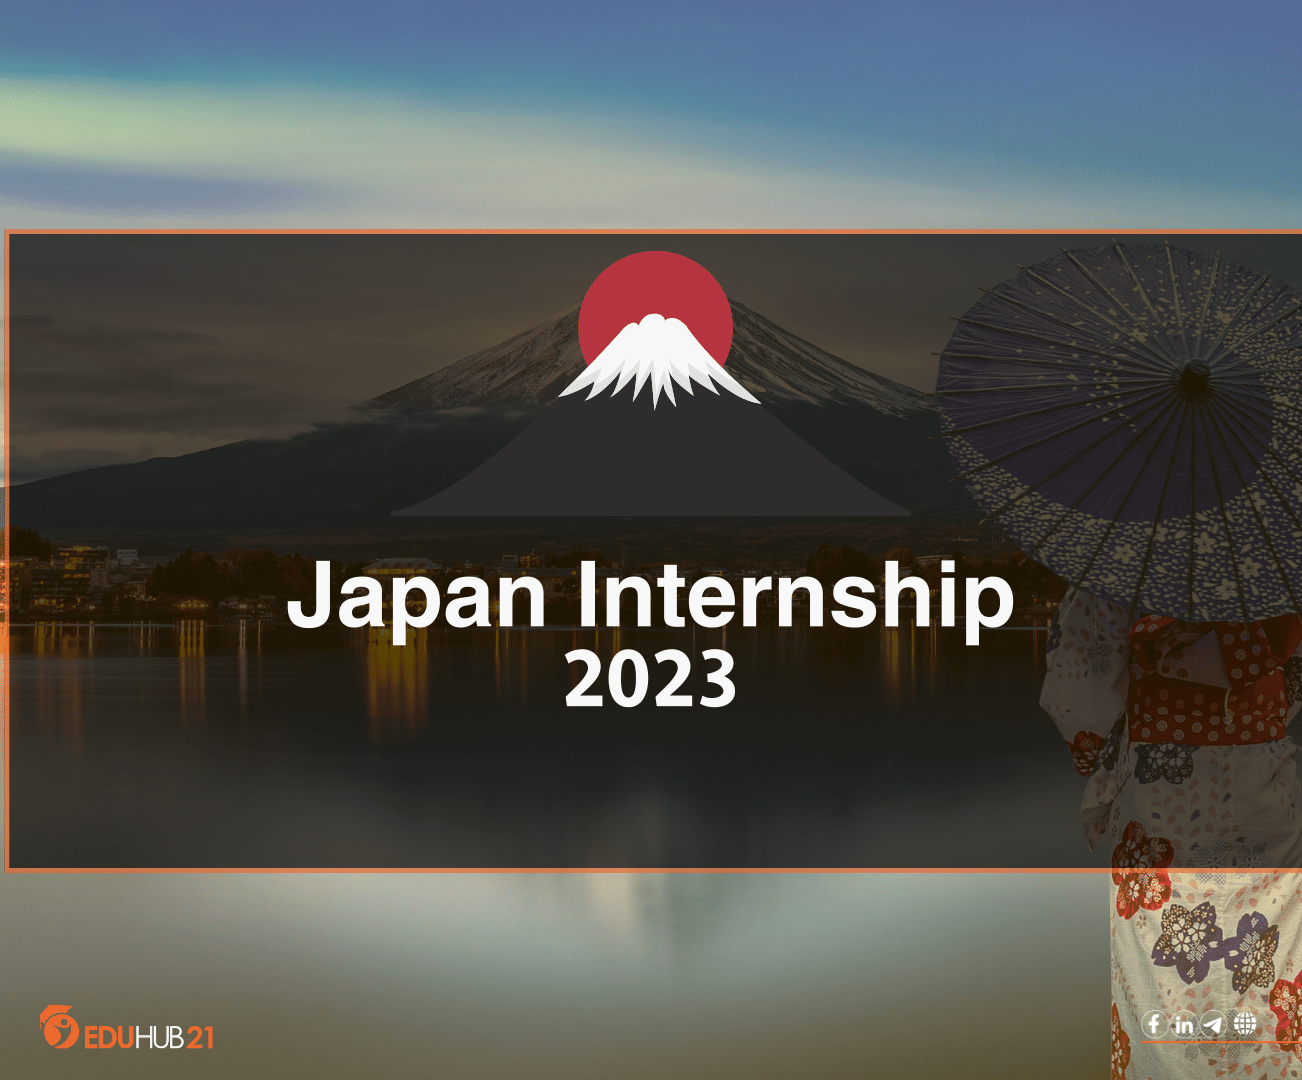 Japan Internship 2023 Eduhub21